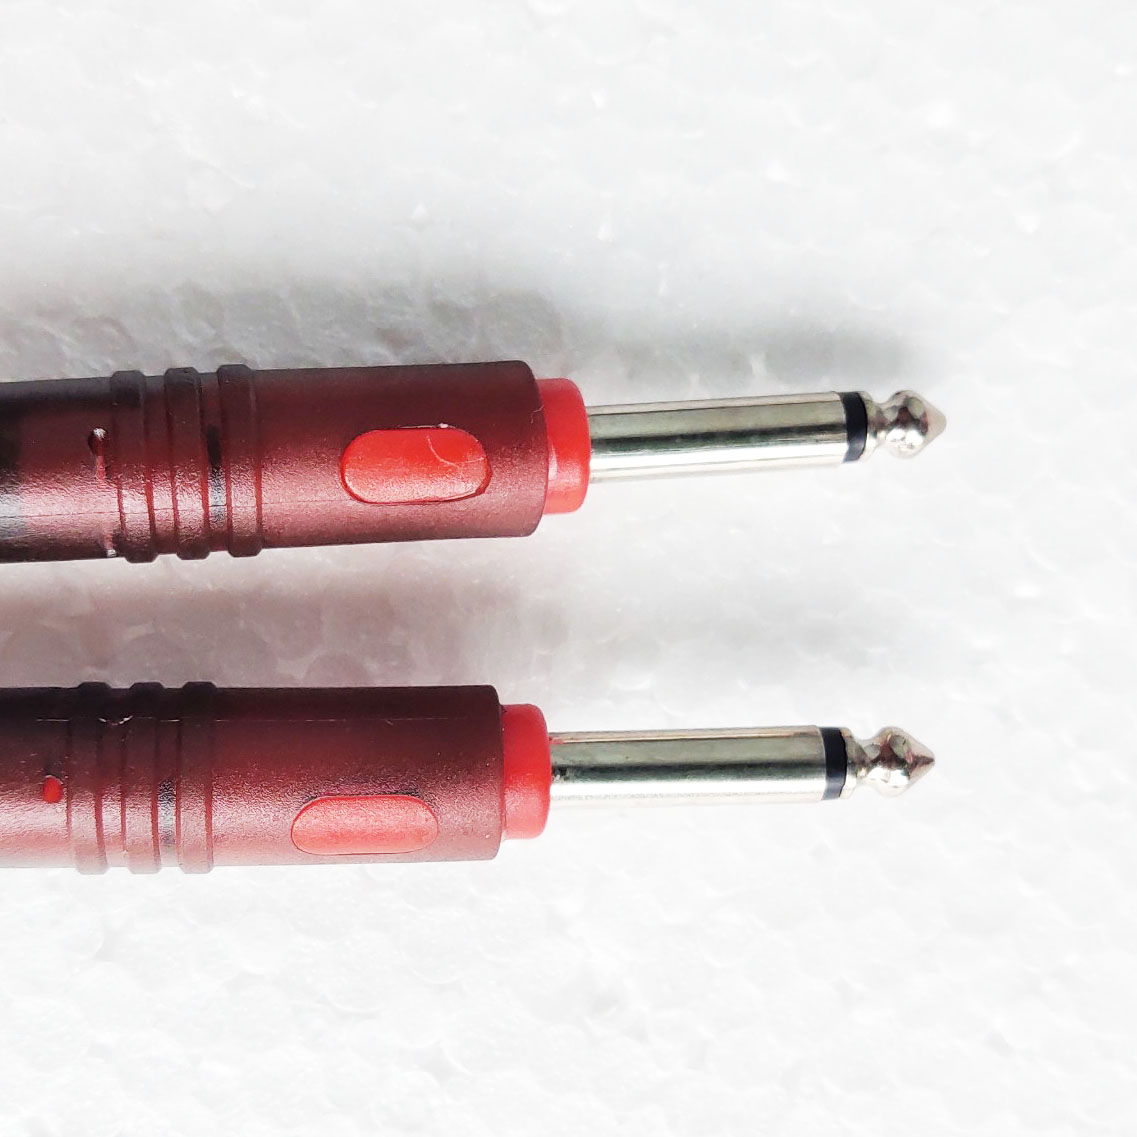 Dây 2 đầu 6mm sử dụng cho các thiết bị âm thanh, micro không dây - dài 1m màu nâu